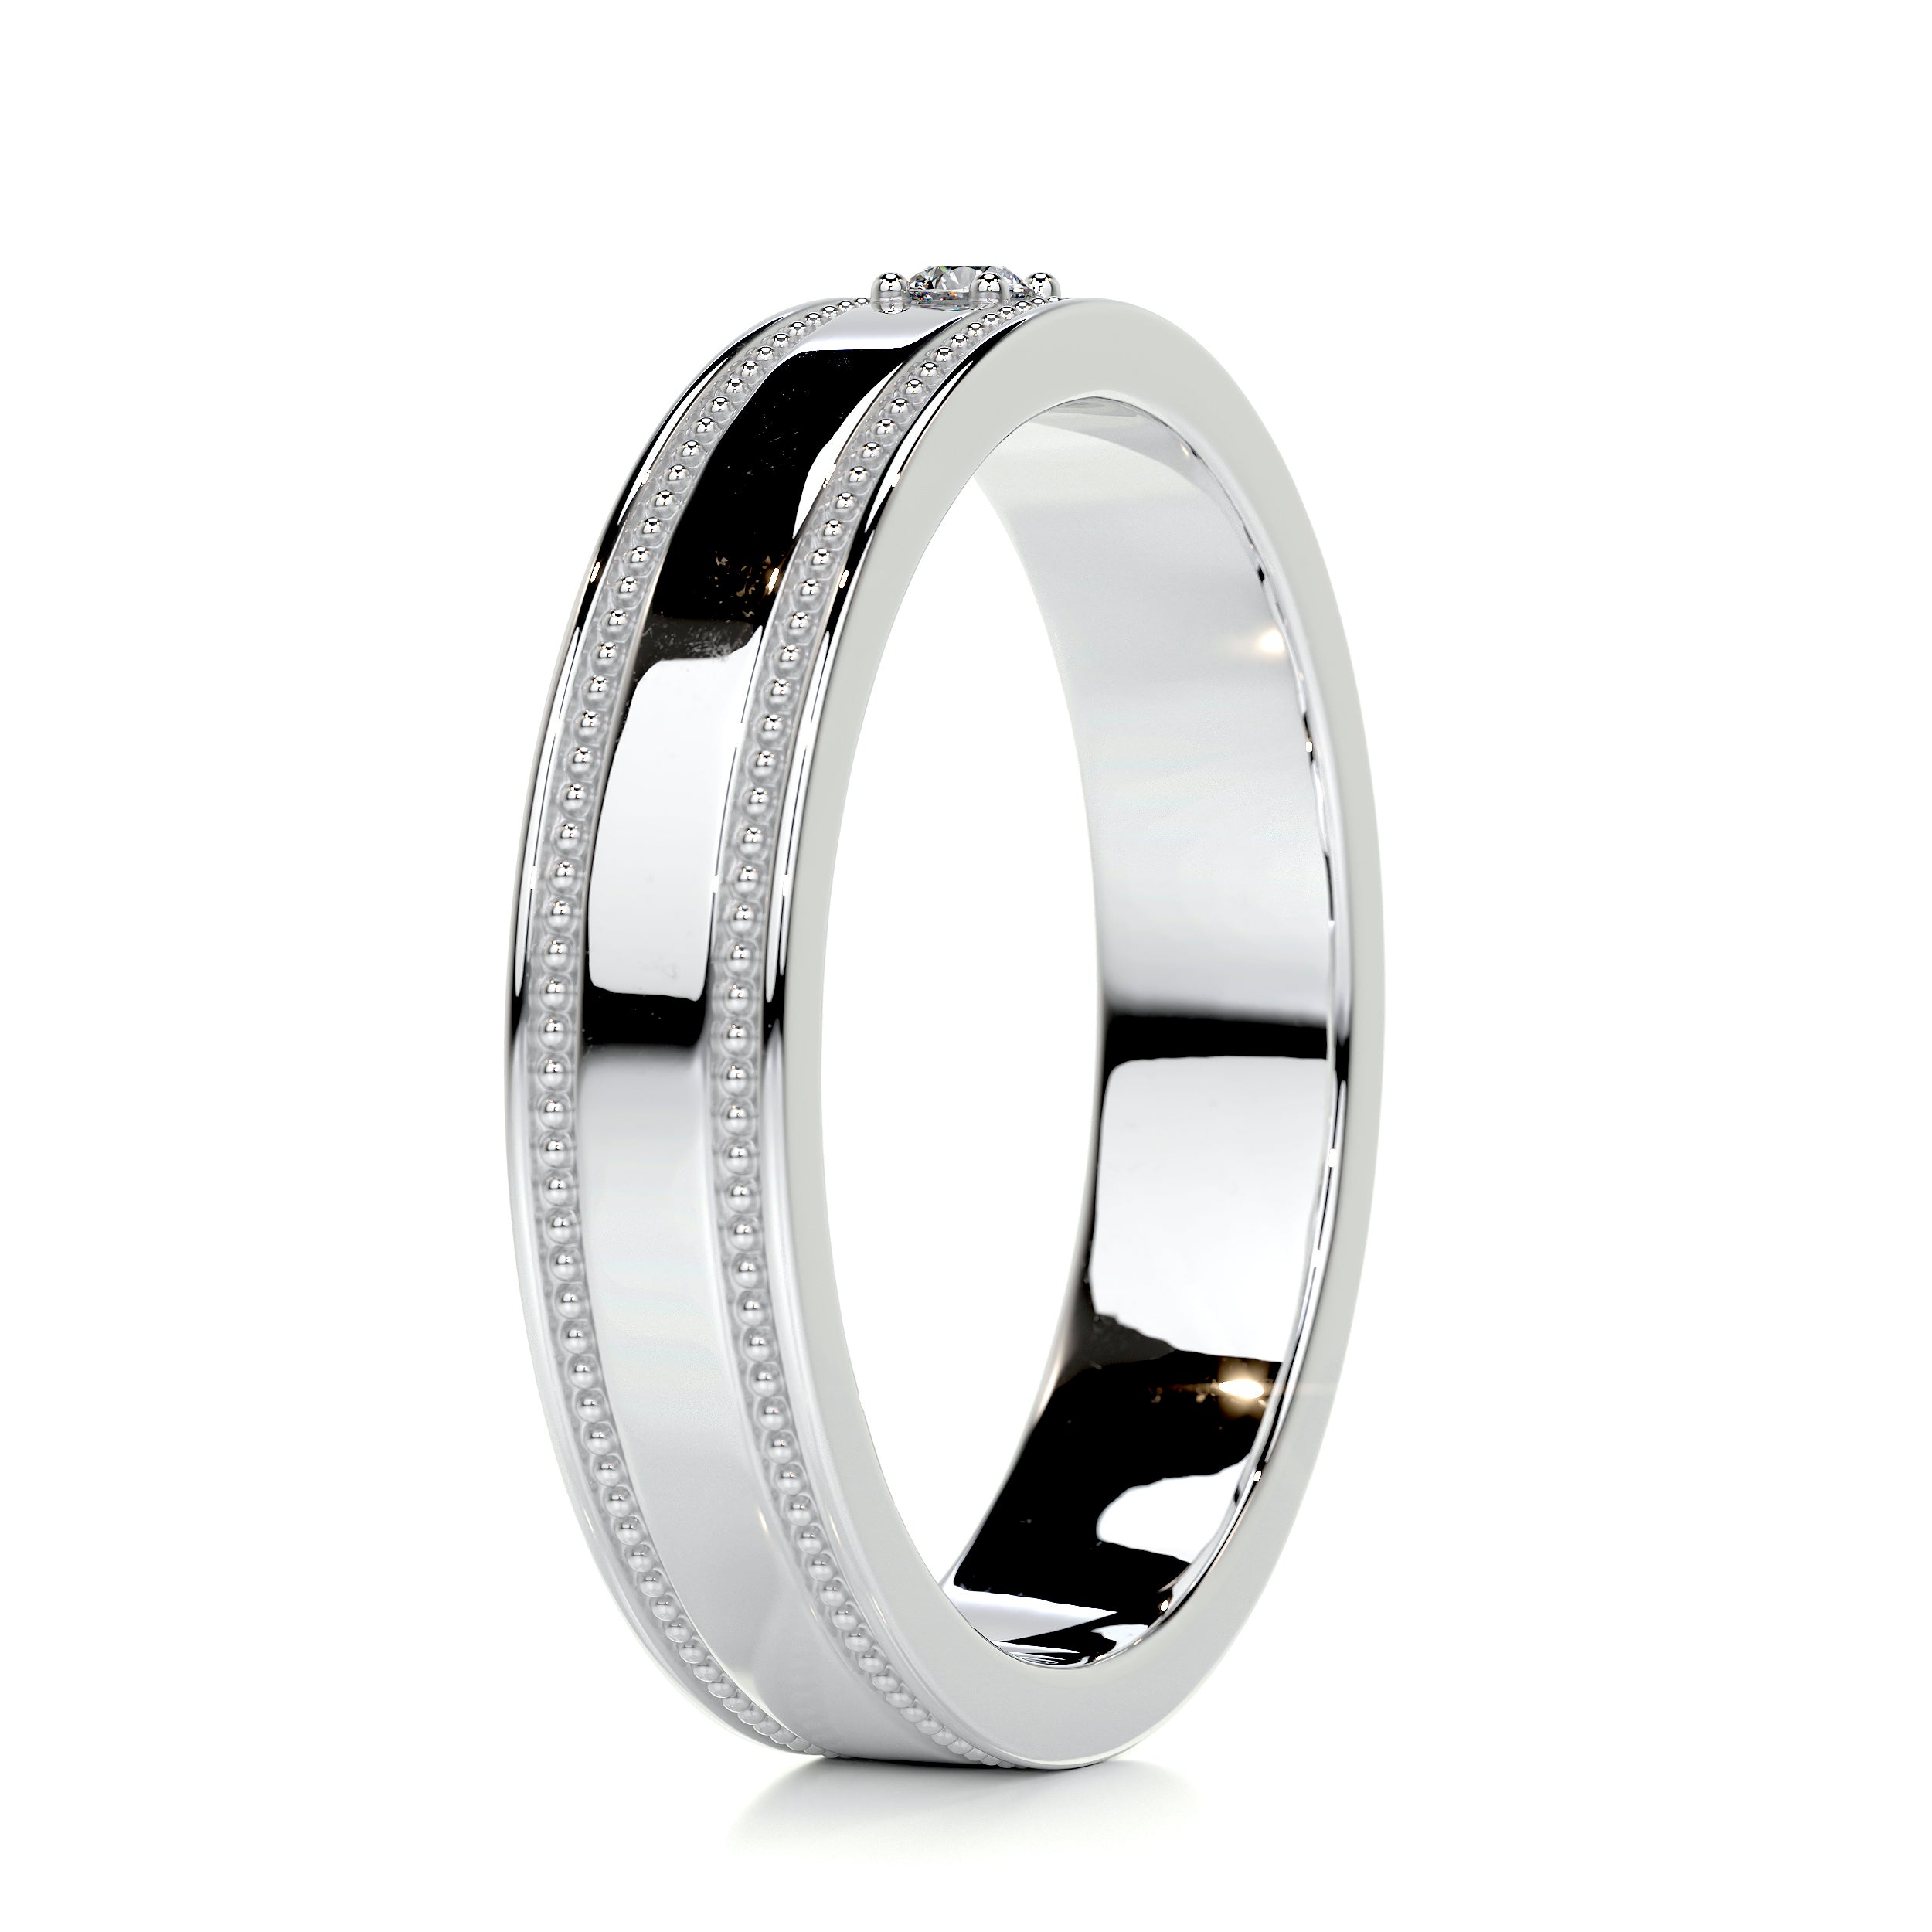 Sherry Diamond Wedding Ring   (0.02 Carat) -14K White Gold